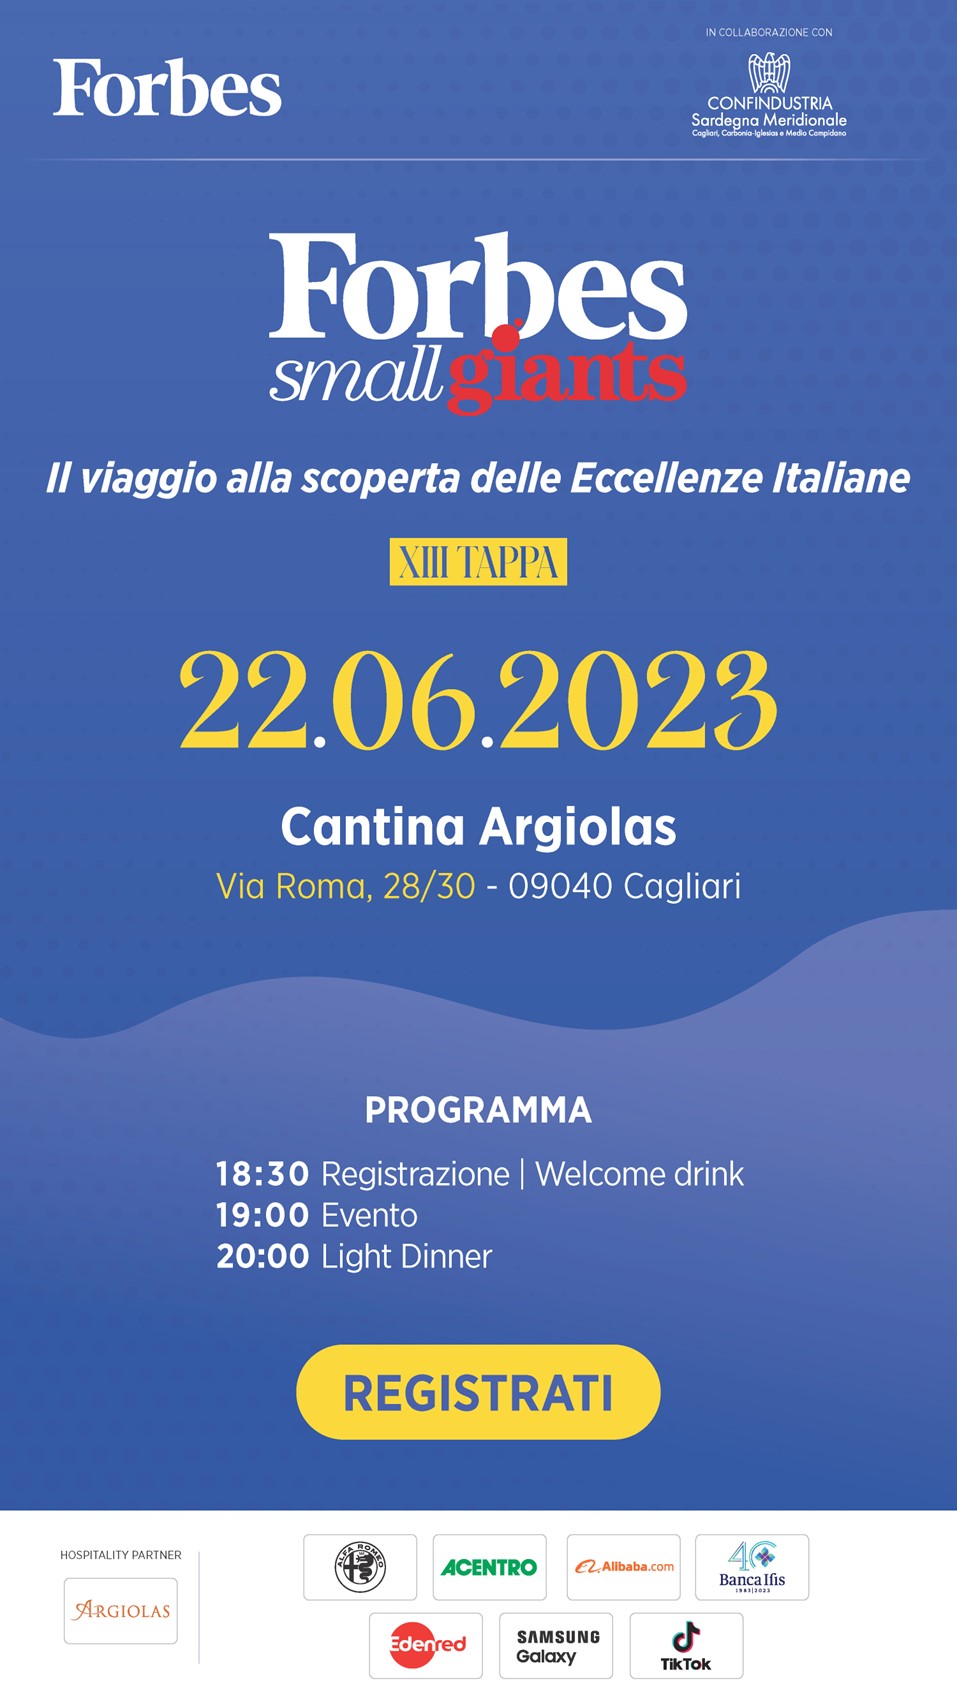 Forbes - Il viaggio alla scoperta delle Eccellenze Italiane: Cantina Argiolas